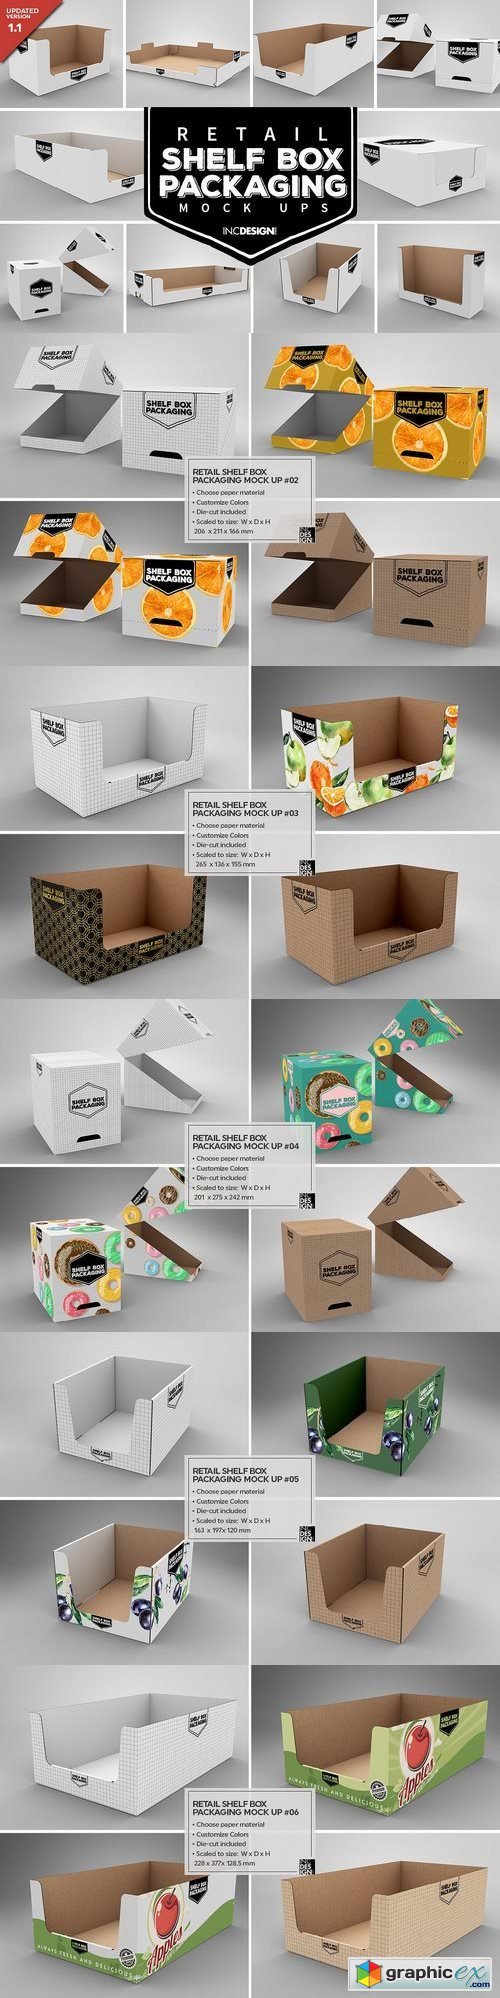 Retail Shelf Box Packaging MockUps1